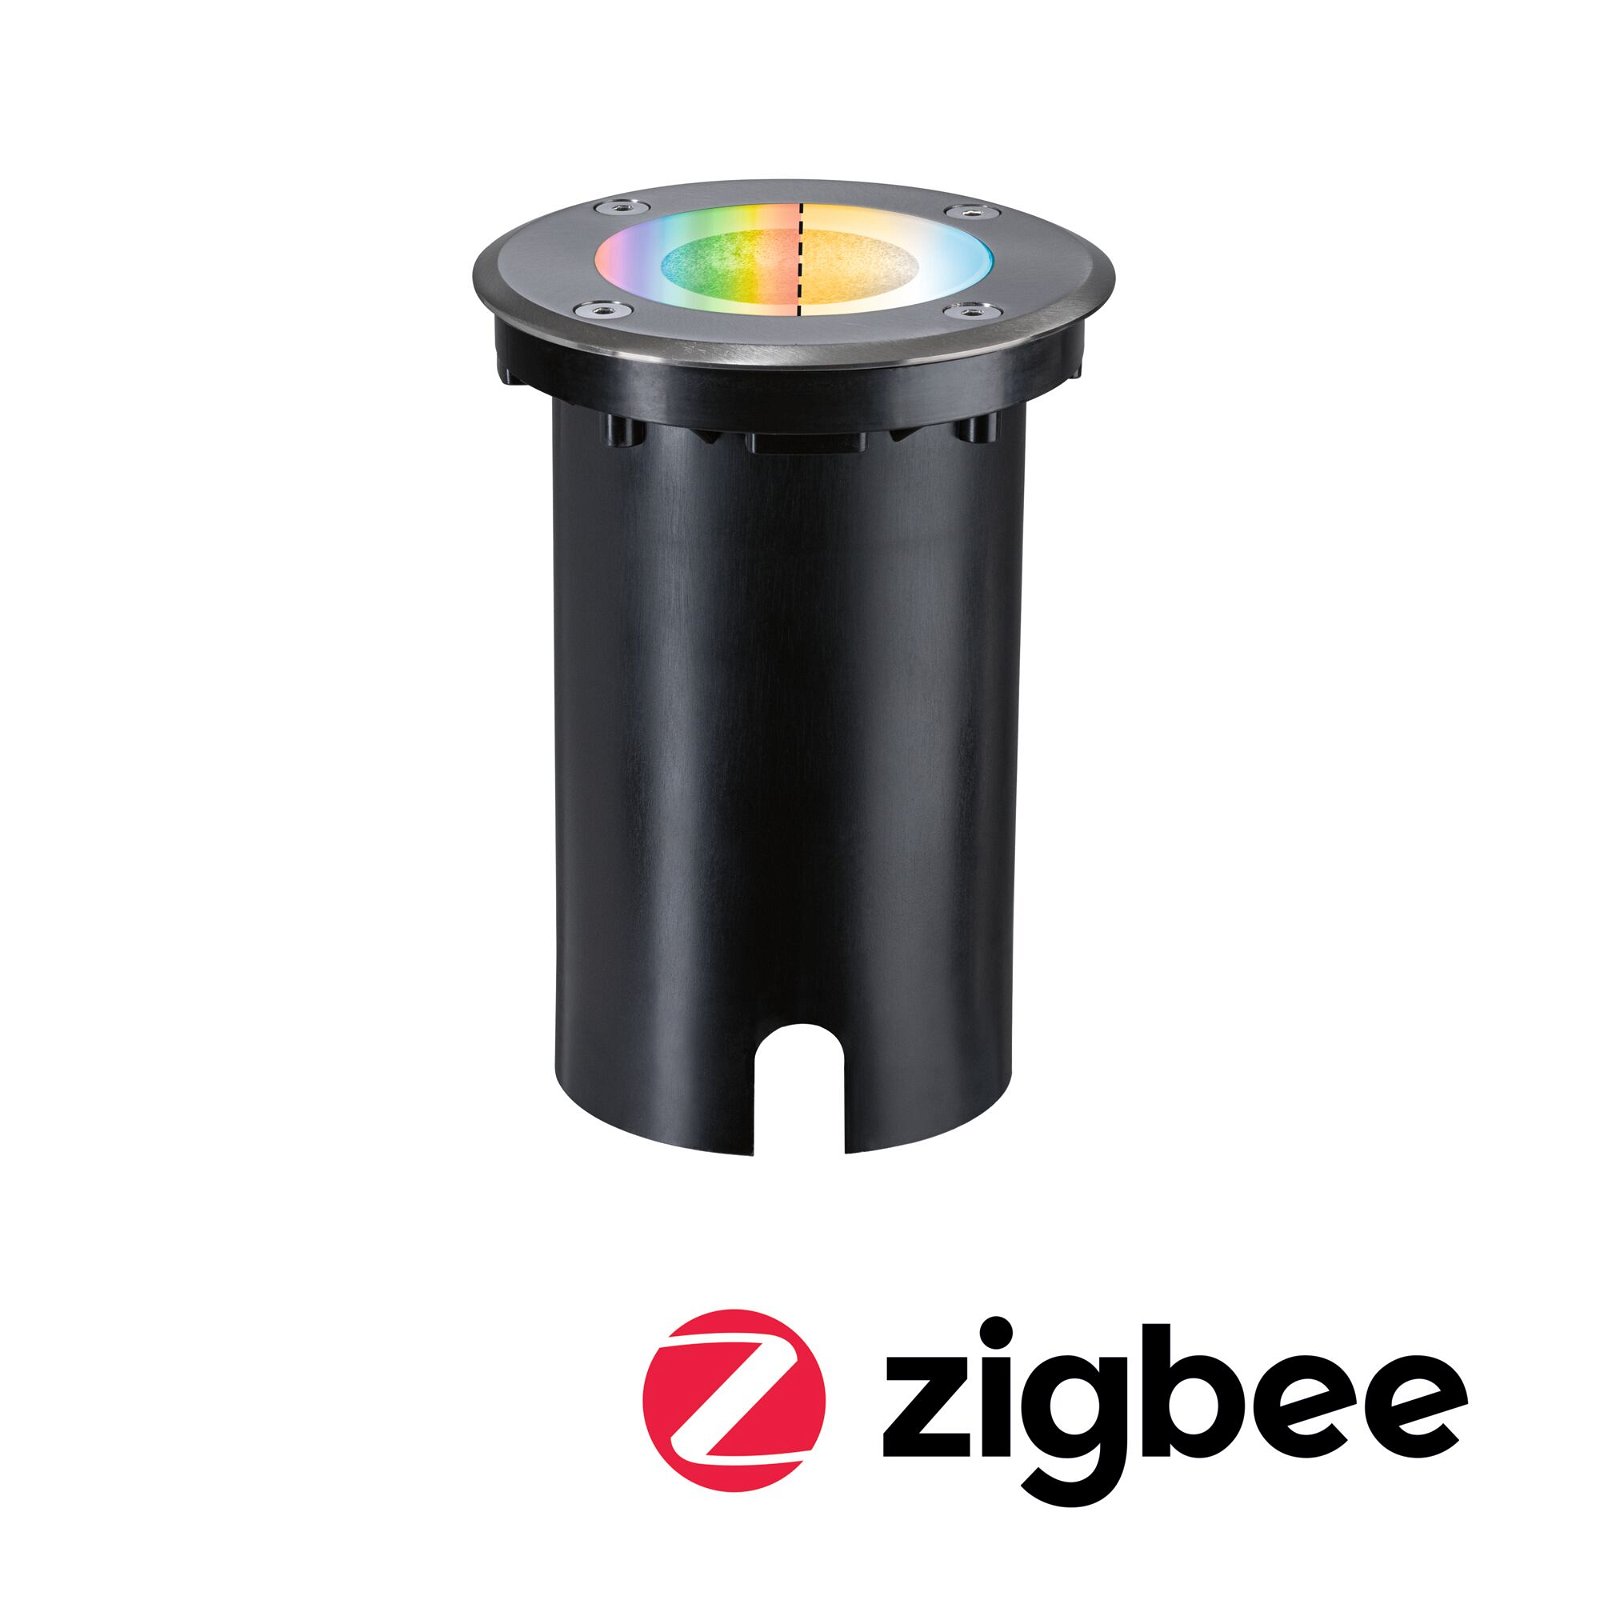 LED Bodeneinbauleuchte Smart Home Zigbee 3.0 Floor IP67 rund 110mm RGBW+ 4,9W 300lm 230V Eisen gebürstet Aluminium